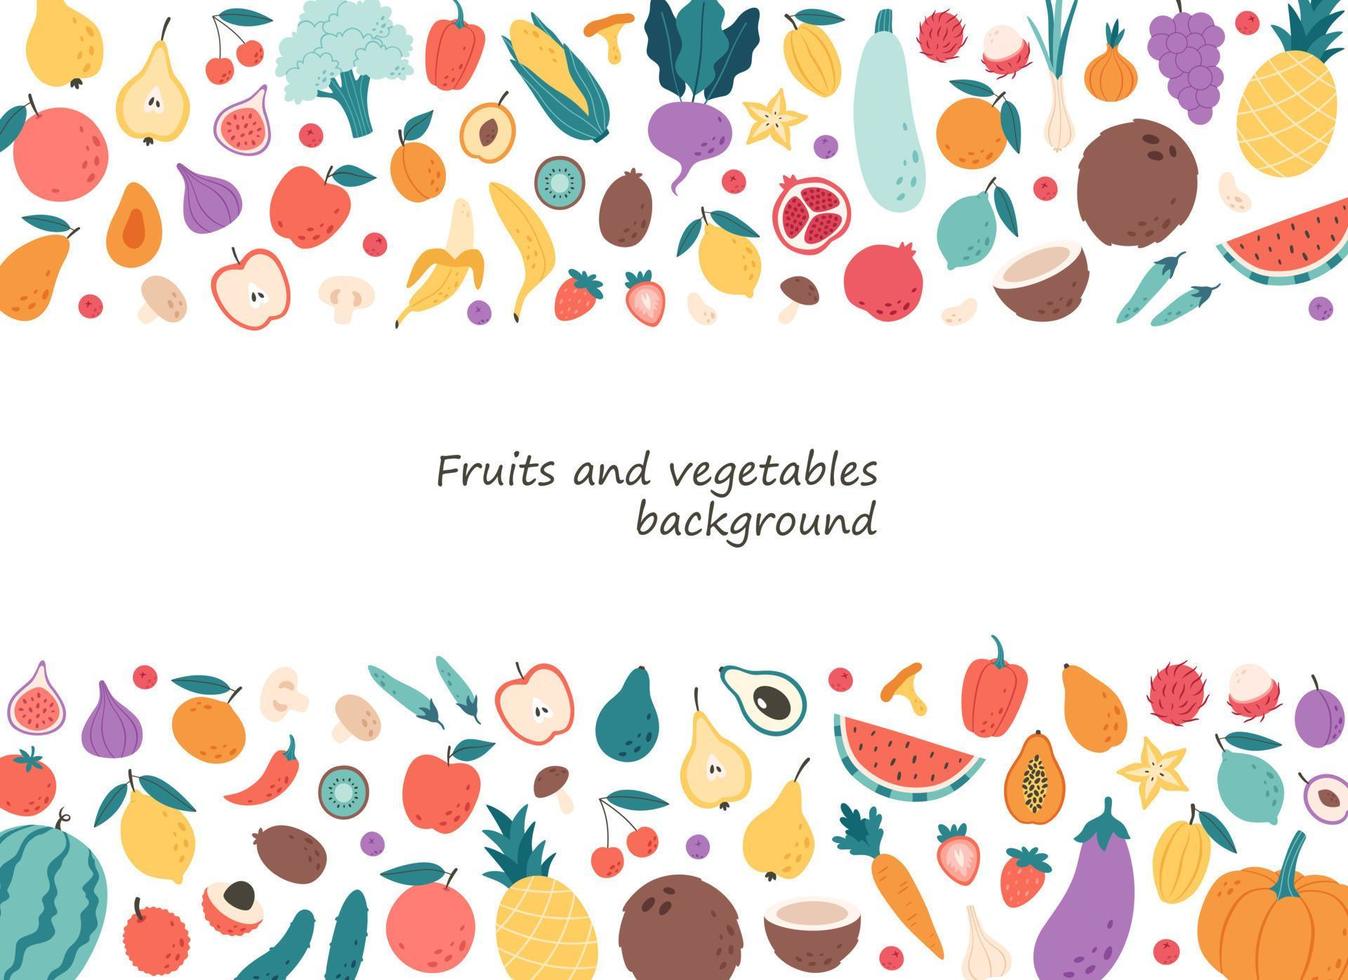 groenten, fruit, bessen en paddestoelen achtergrond. natuurlijke biologische voeding. gezonde voeding, dieetproducten vector